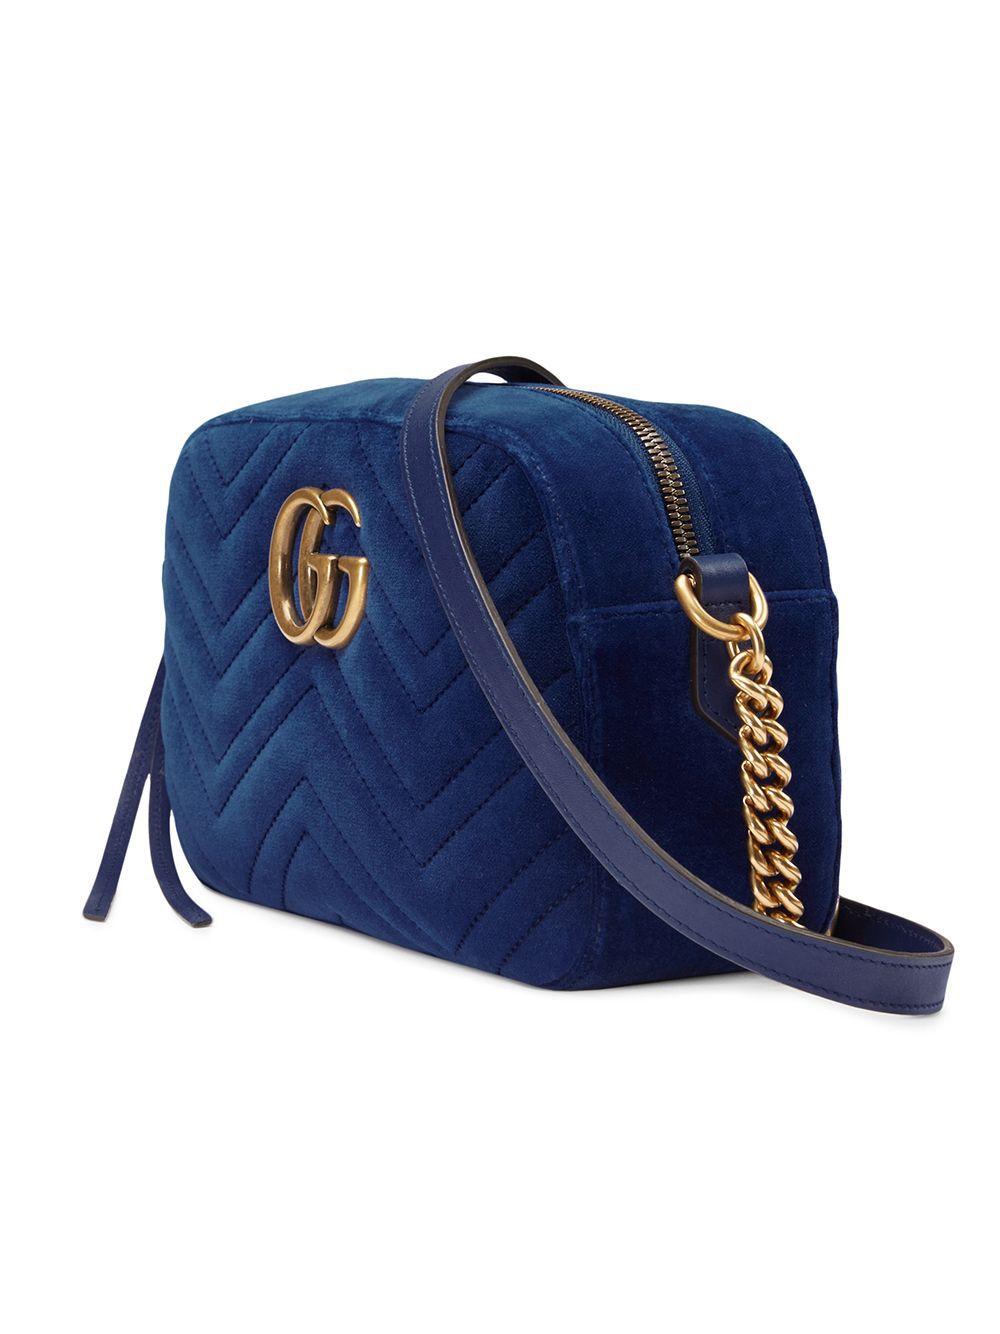 Gucci GG Marmont Velvet Small Shoulder Bag in Cobalt (Blue) - Lyst